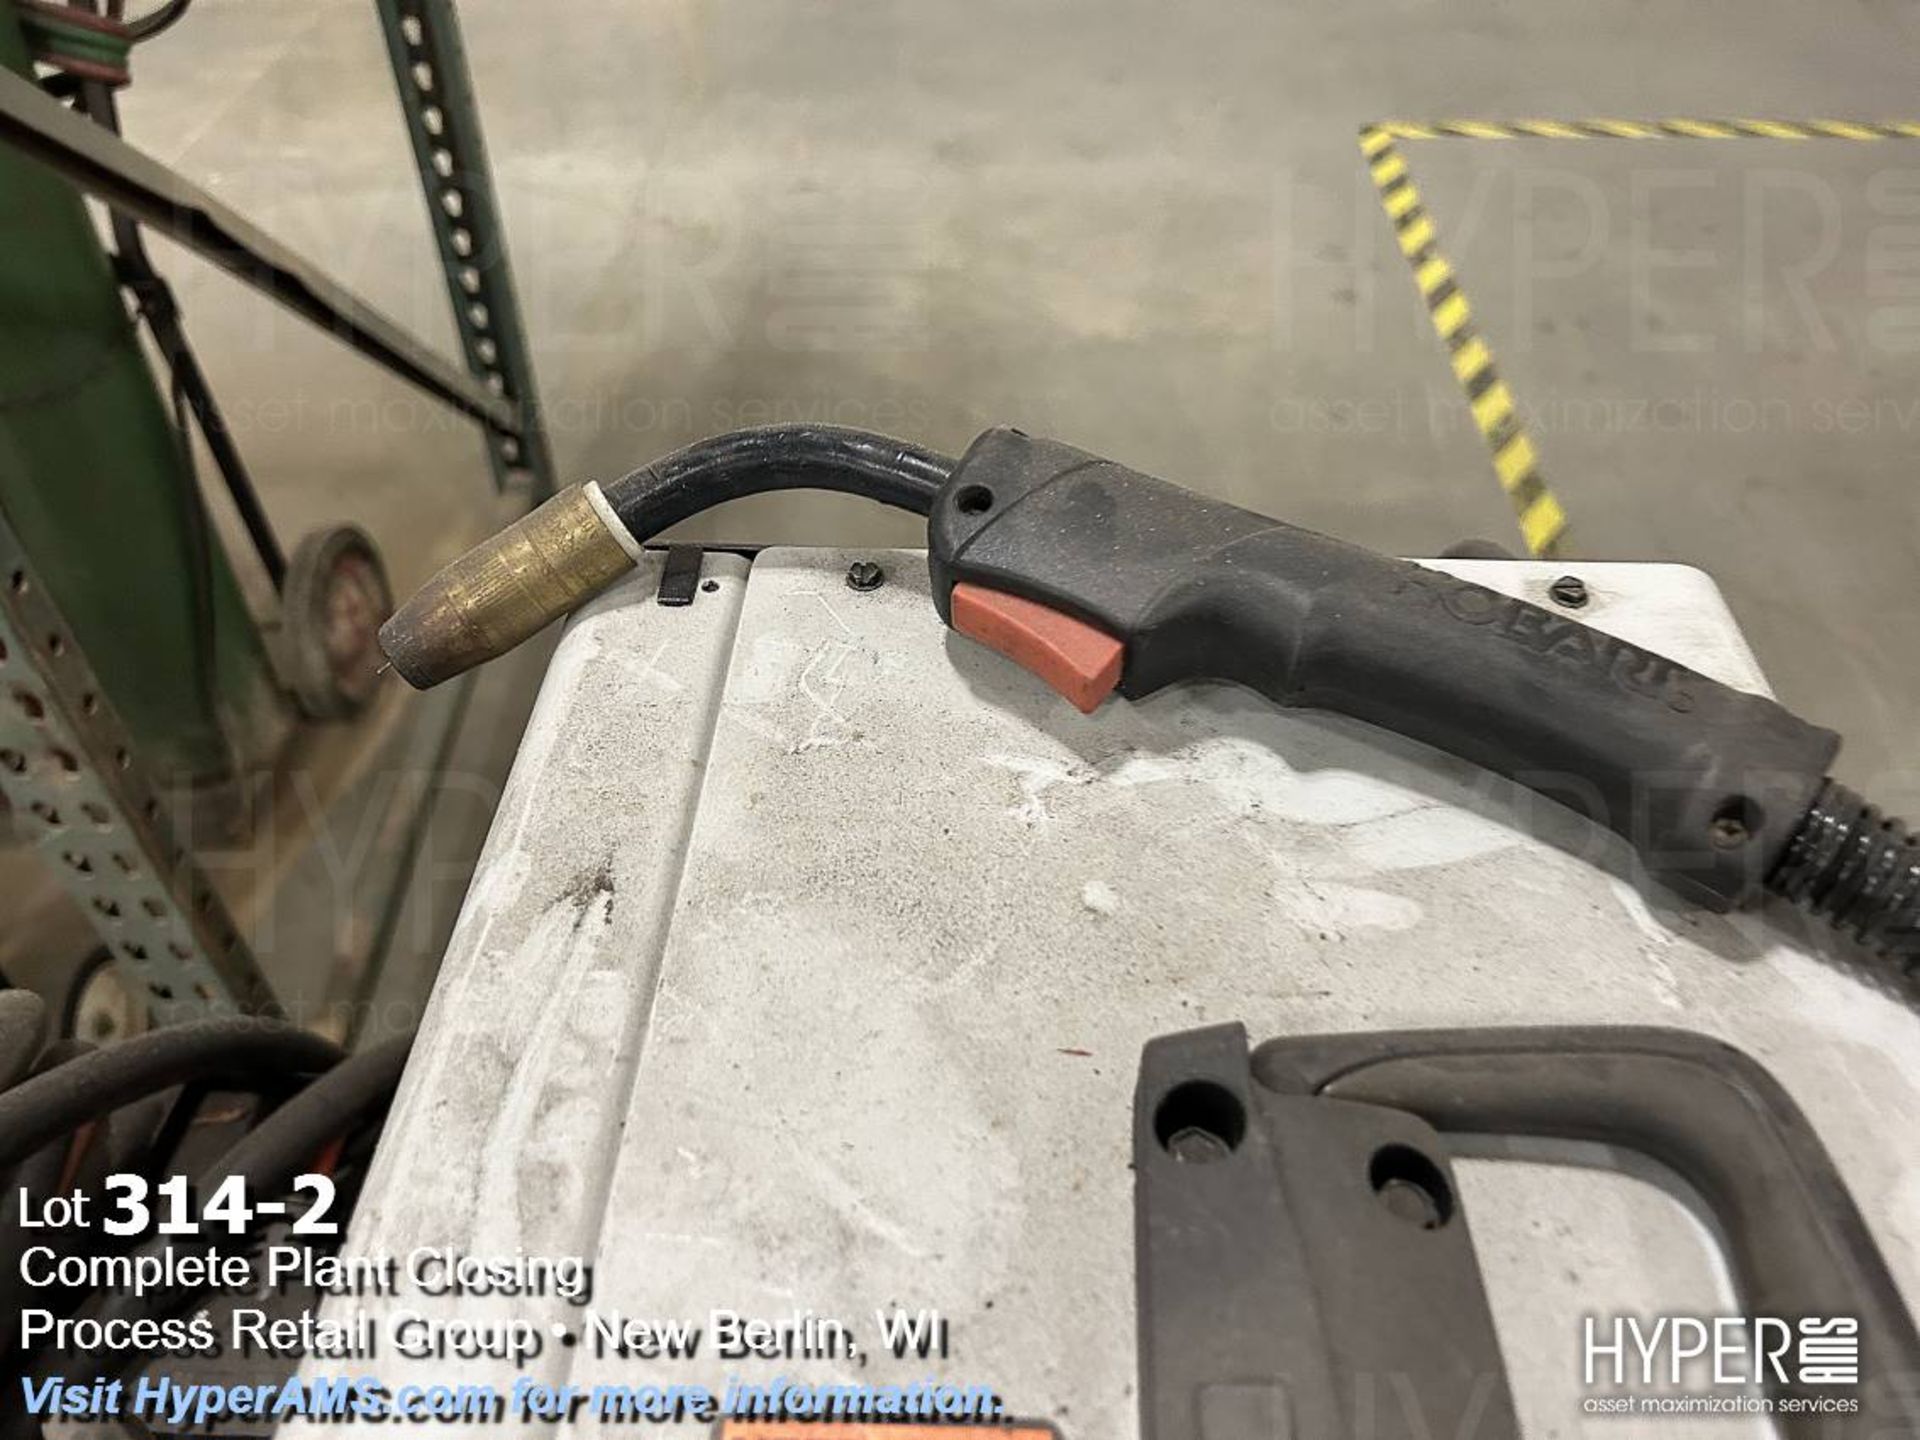 Hobart Handler 210mvp 115/230v welder - Image 2 of 6